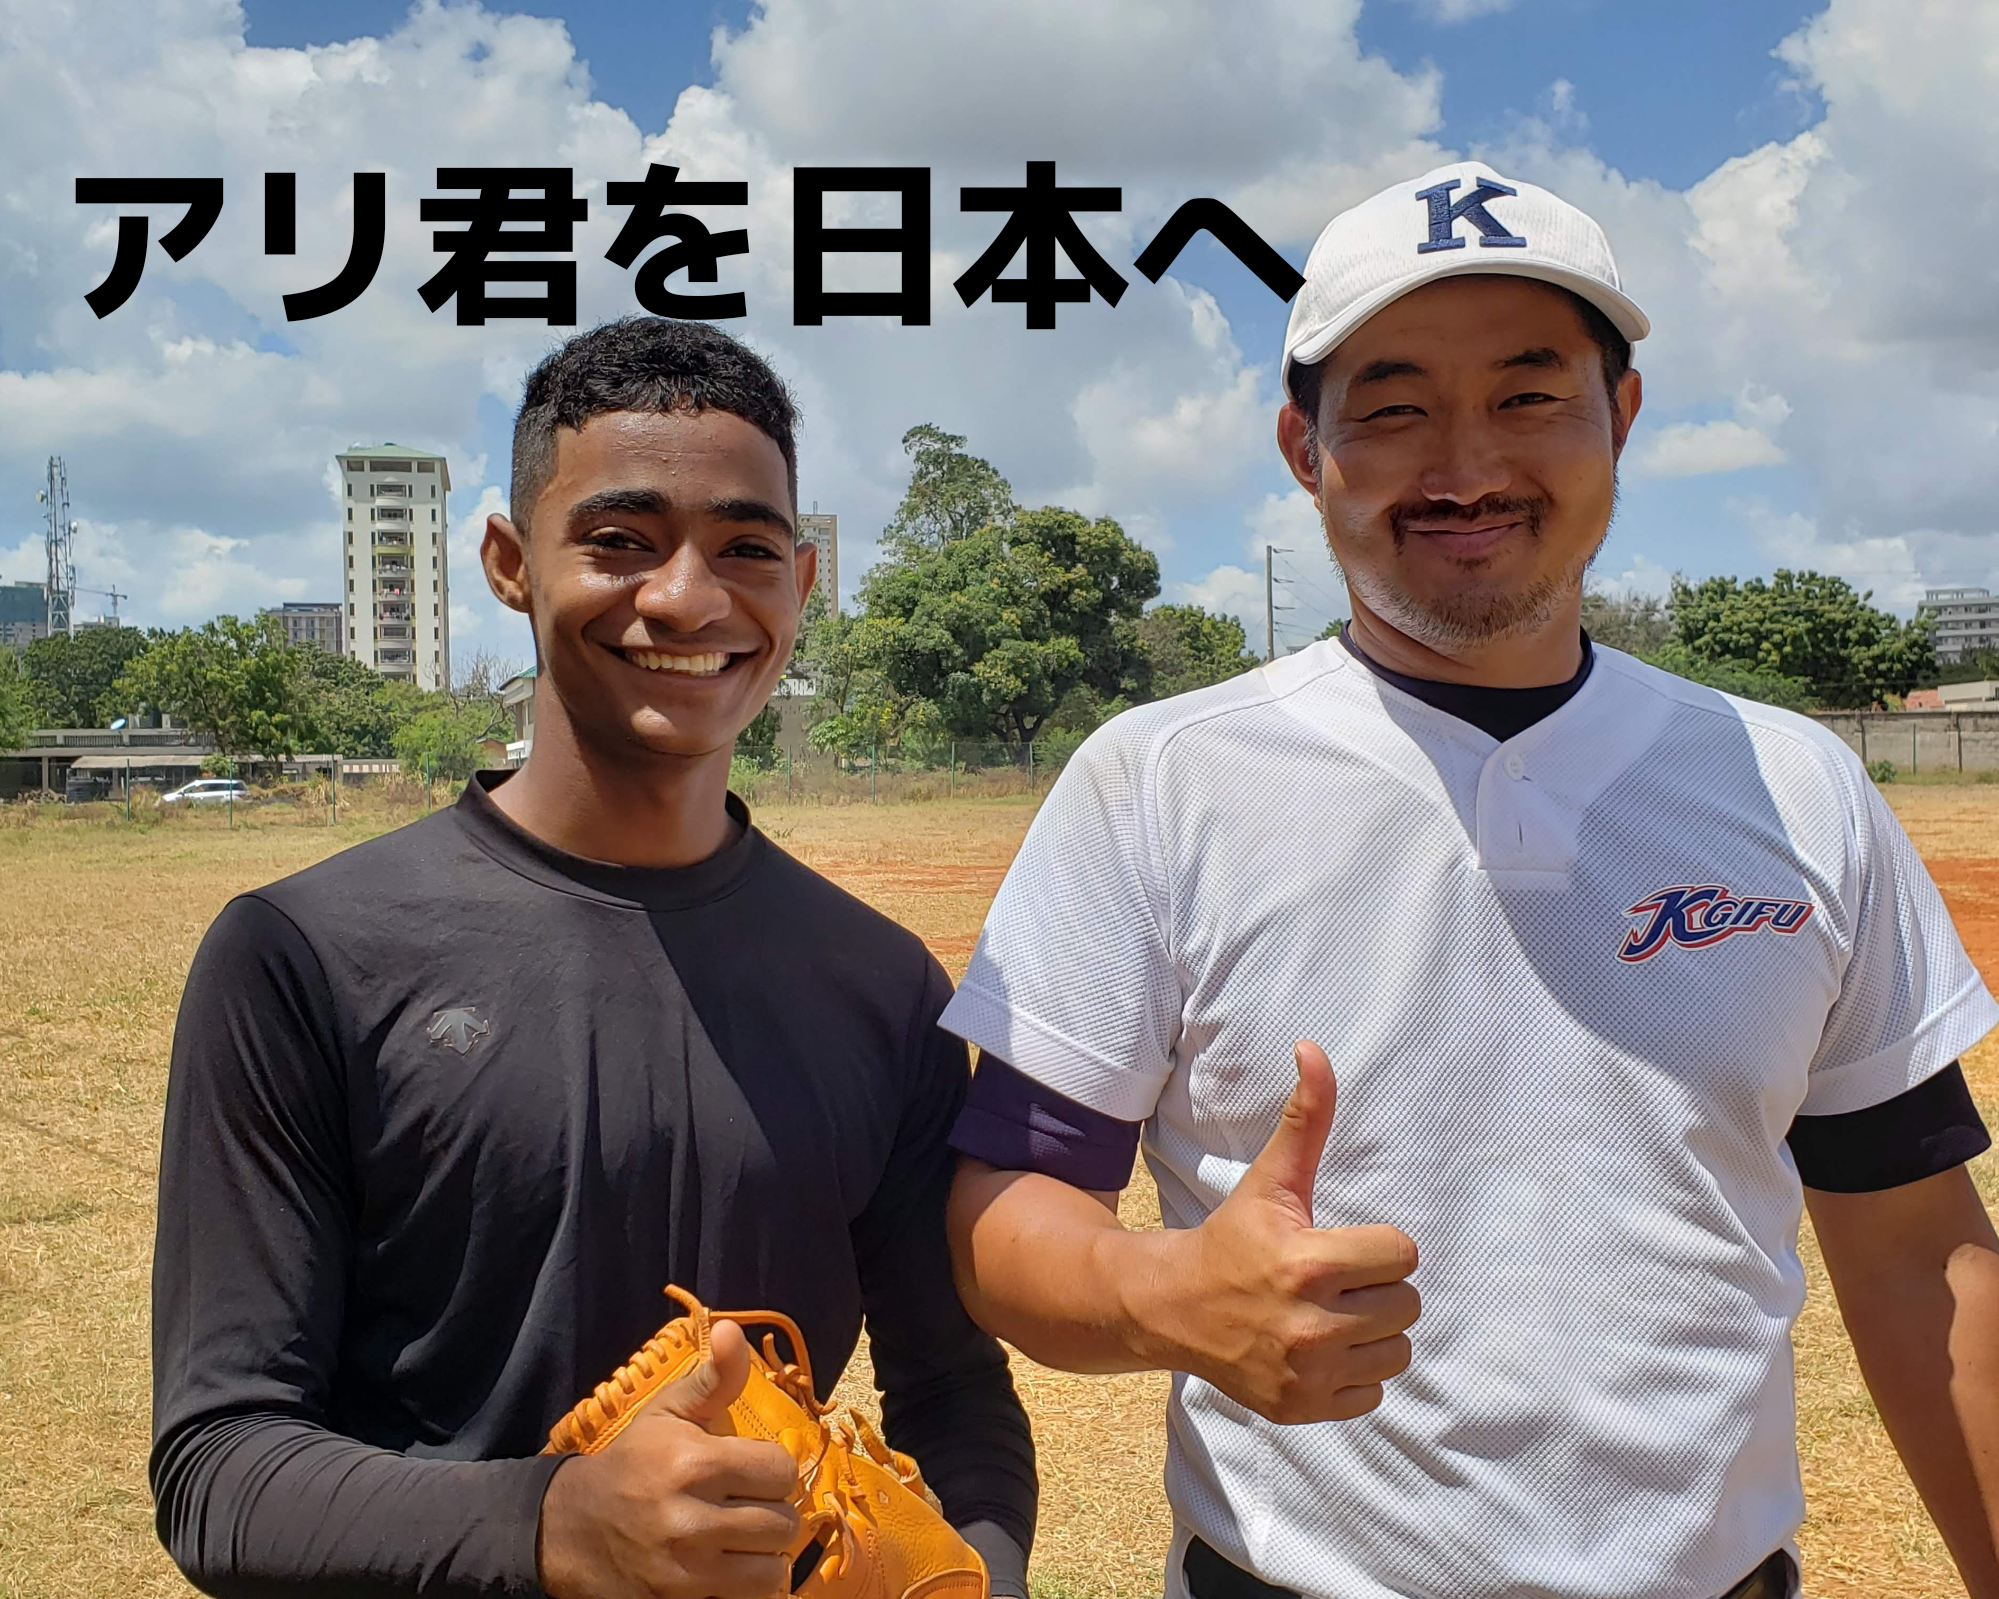 タンザニアのアリ君を日本へ招待するという挑戦〜プロ野球選手の夢を叶える第一歩をお手伝いしたい〜